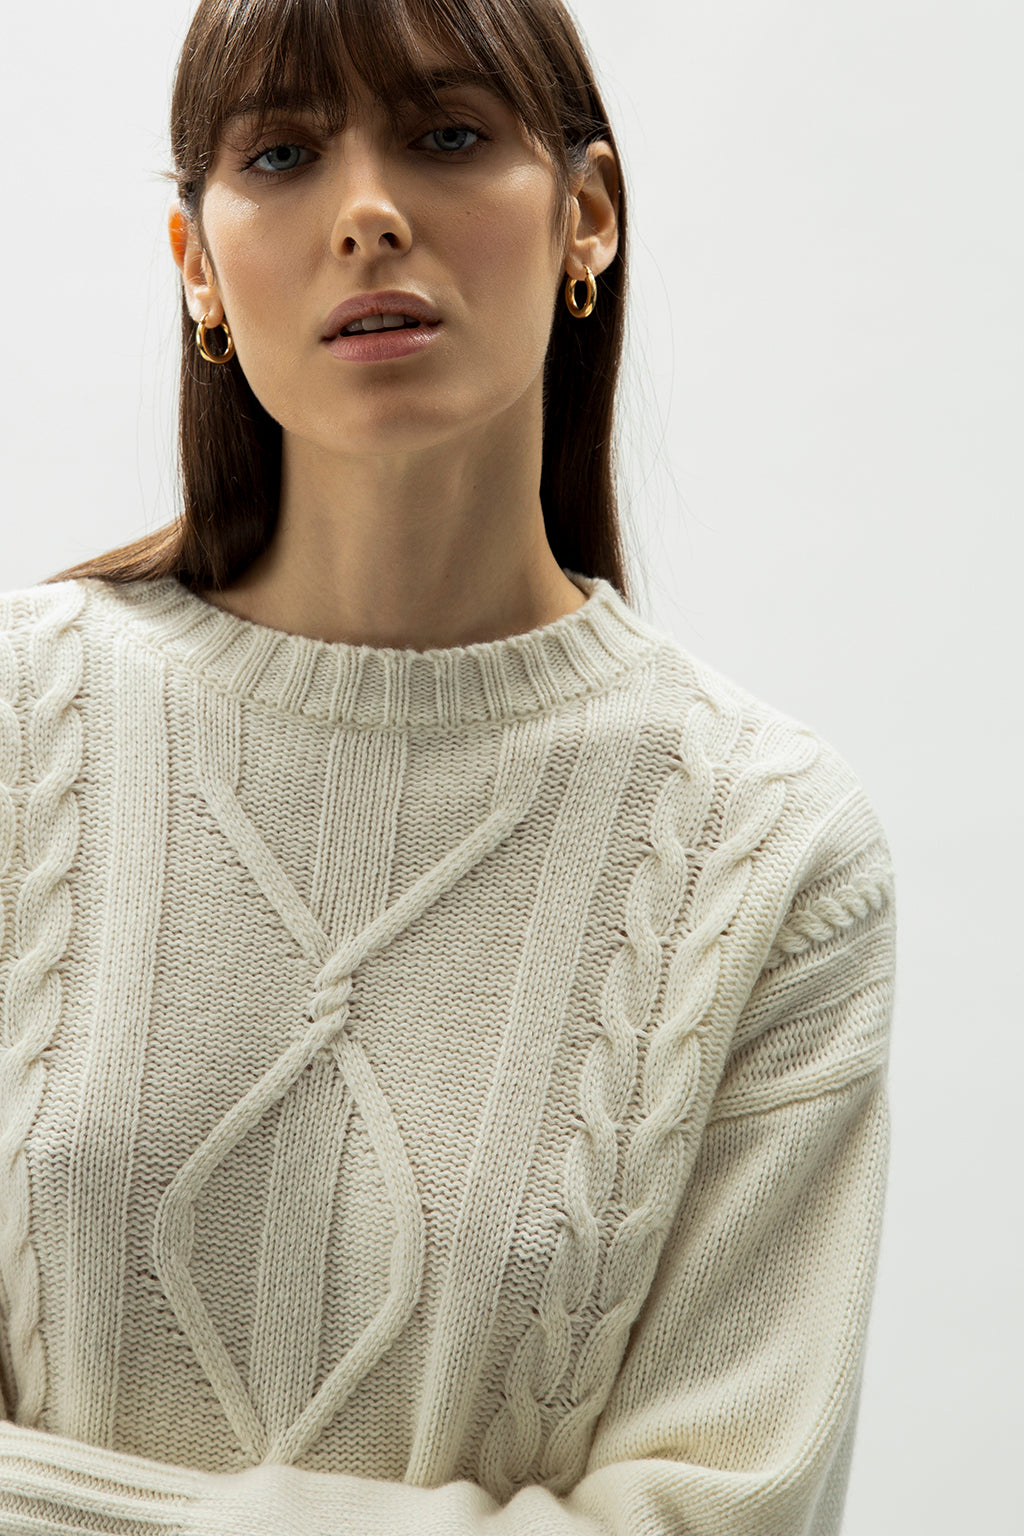 Wholesale sweaters for women: fashion knitwear online